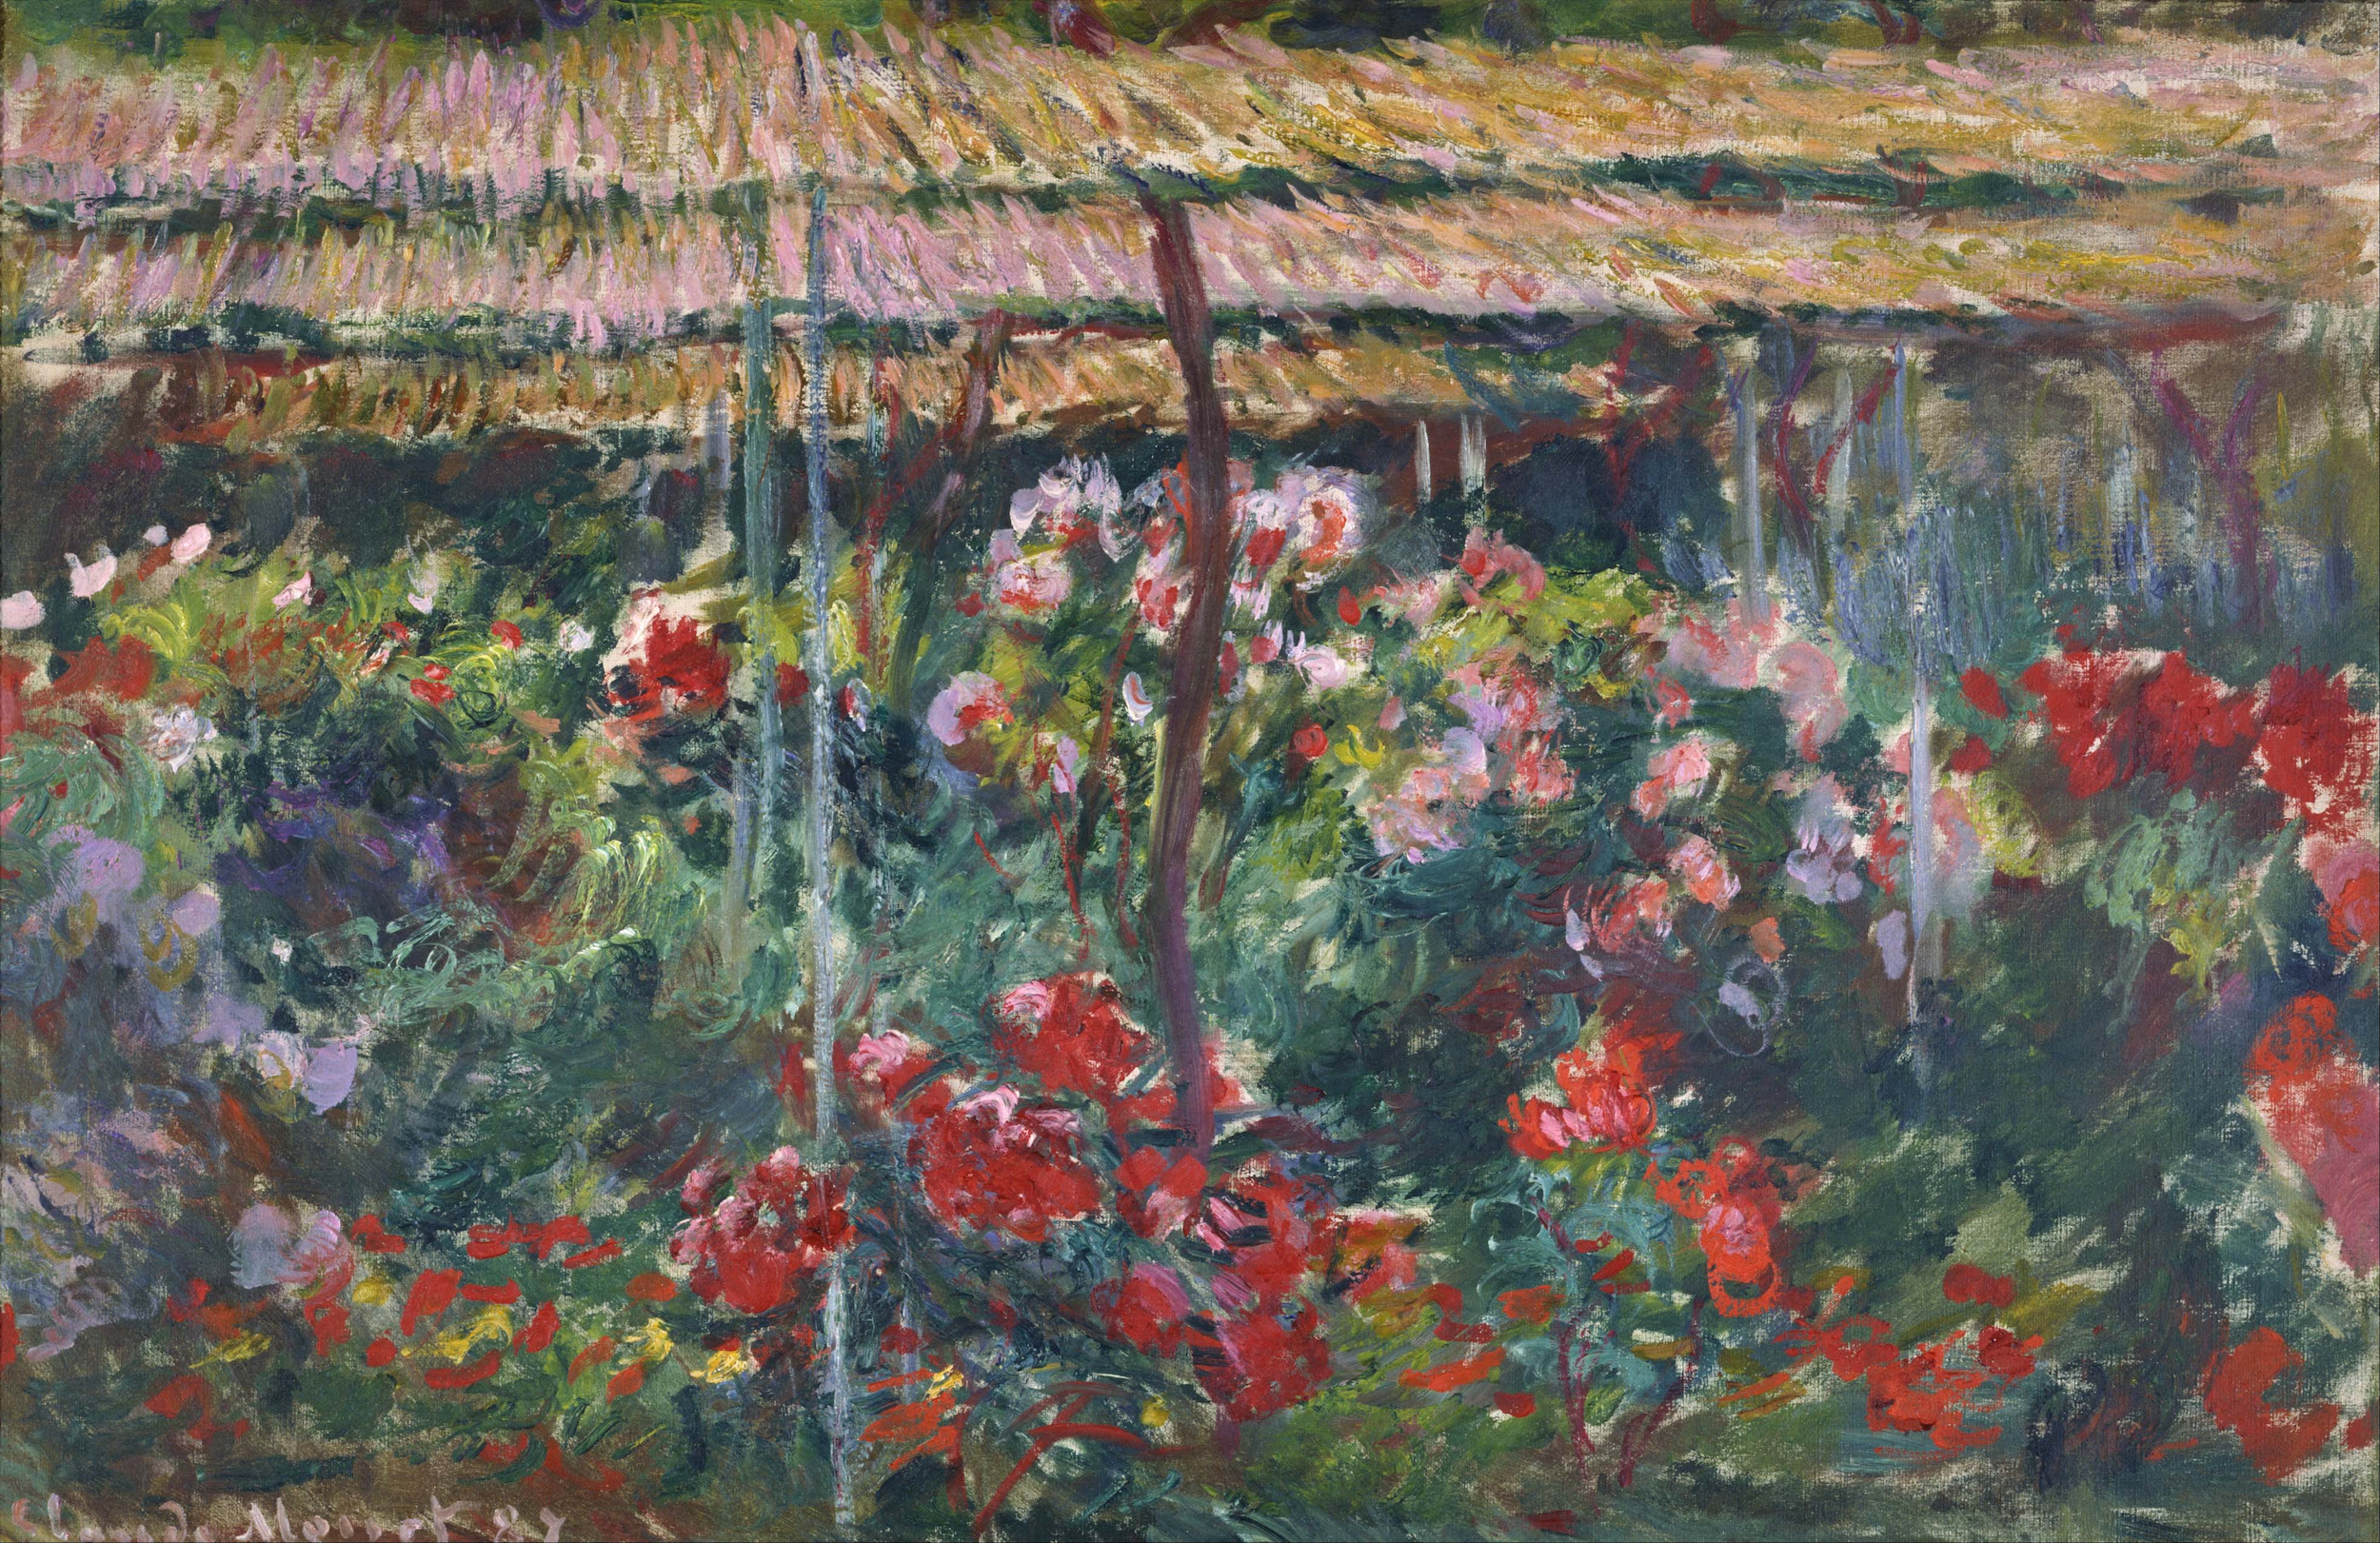 Bazsarózsák by Claude Monet - 1887 - 100 x 65,3 cm 